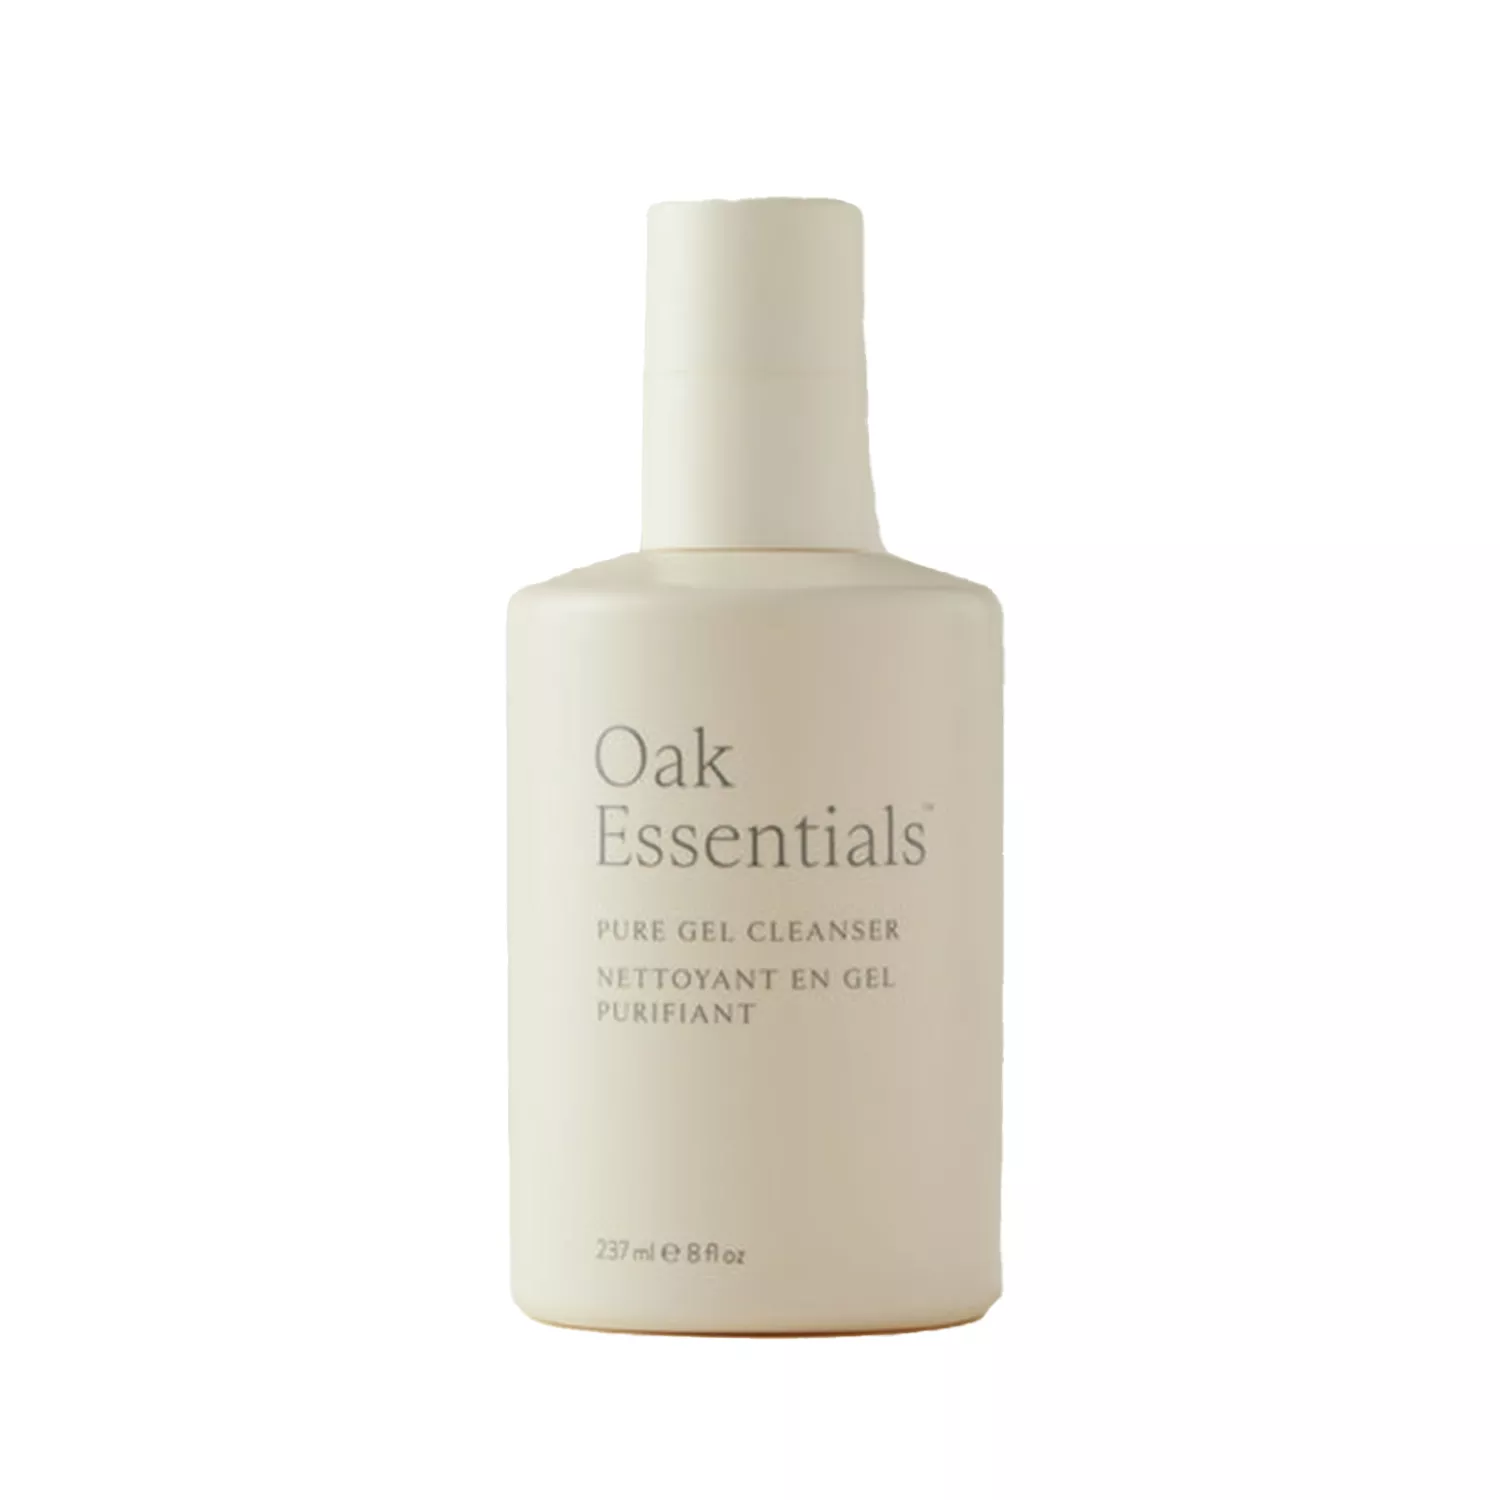 Oak Essentials Pure Gel Cleanser